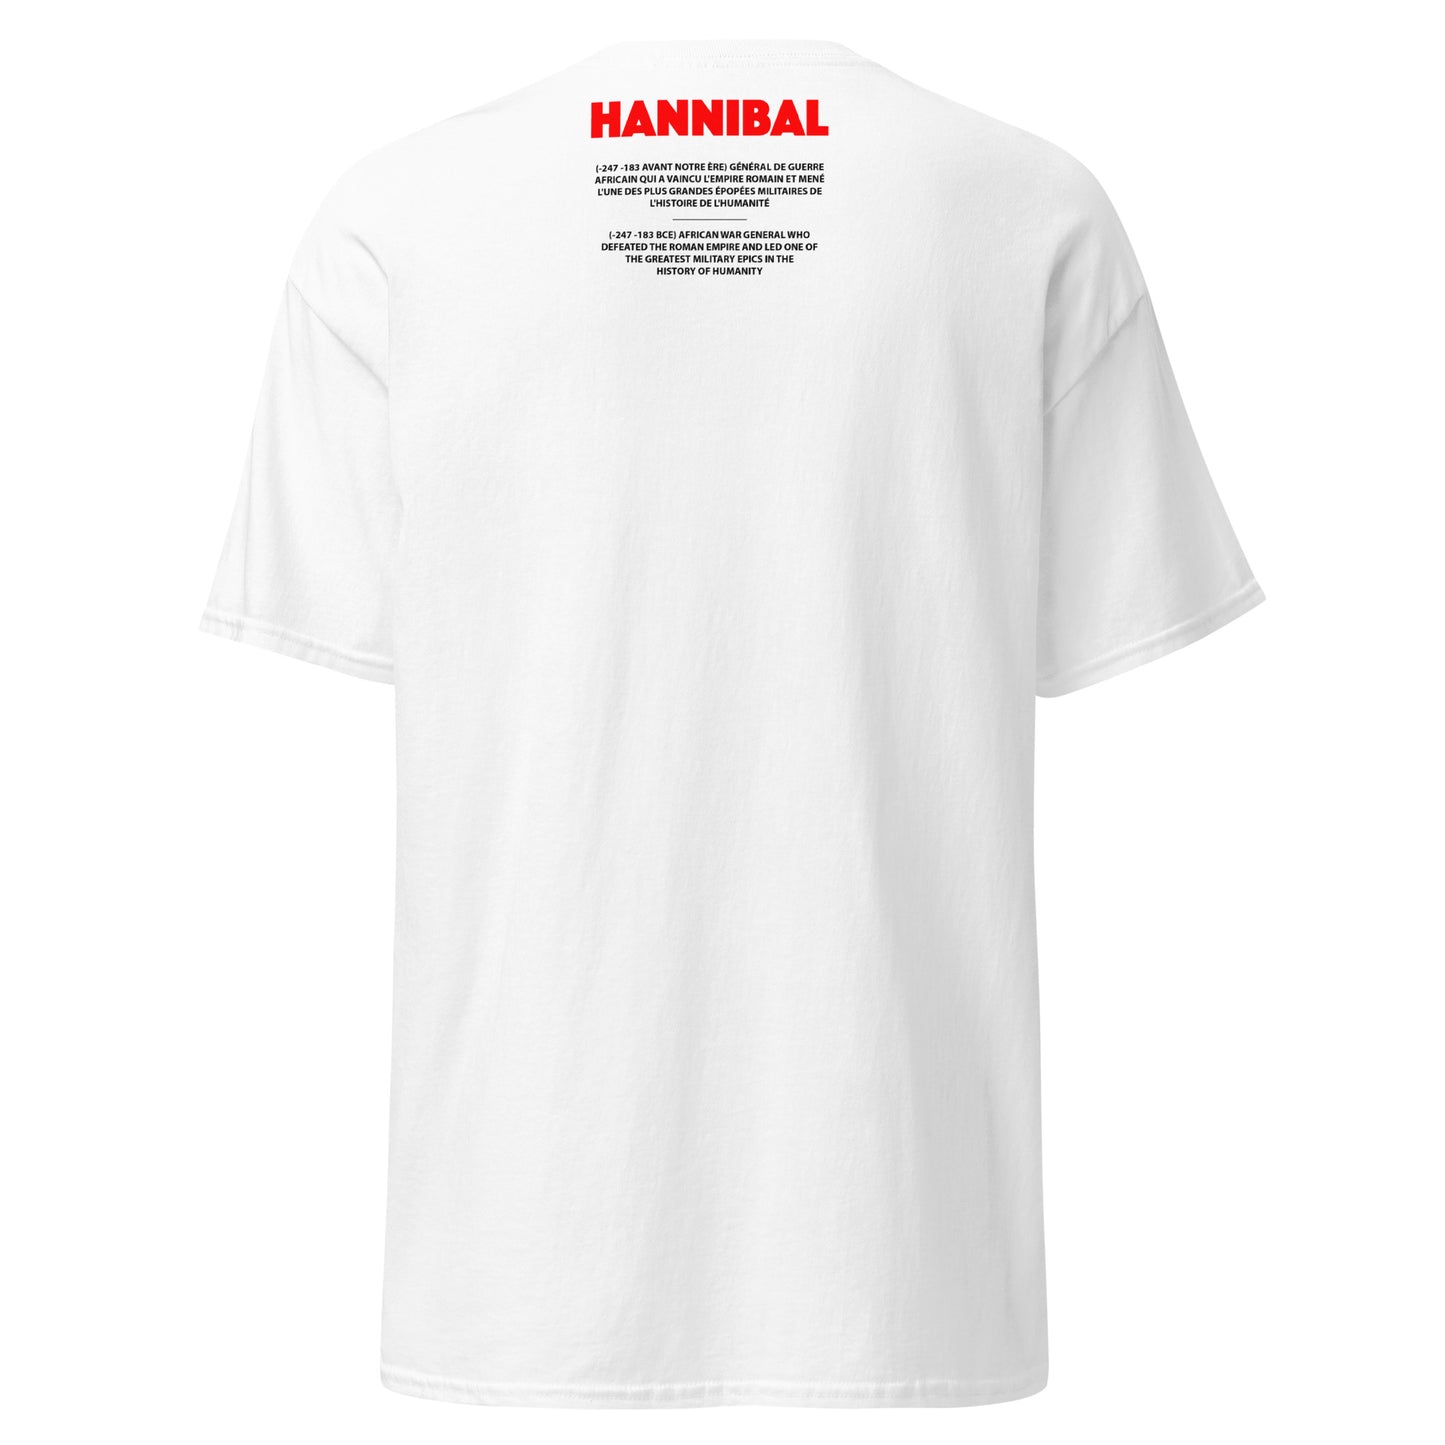 HANNIBAL (T-Shirt Cadre)